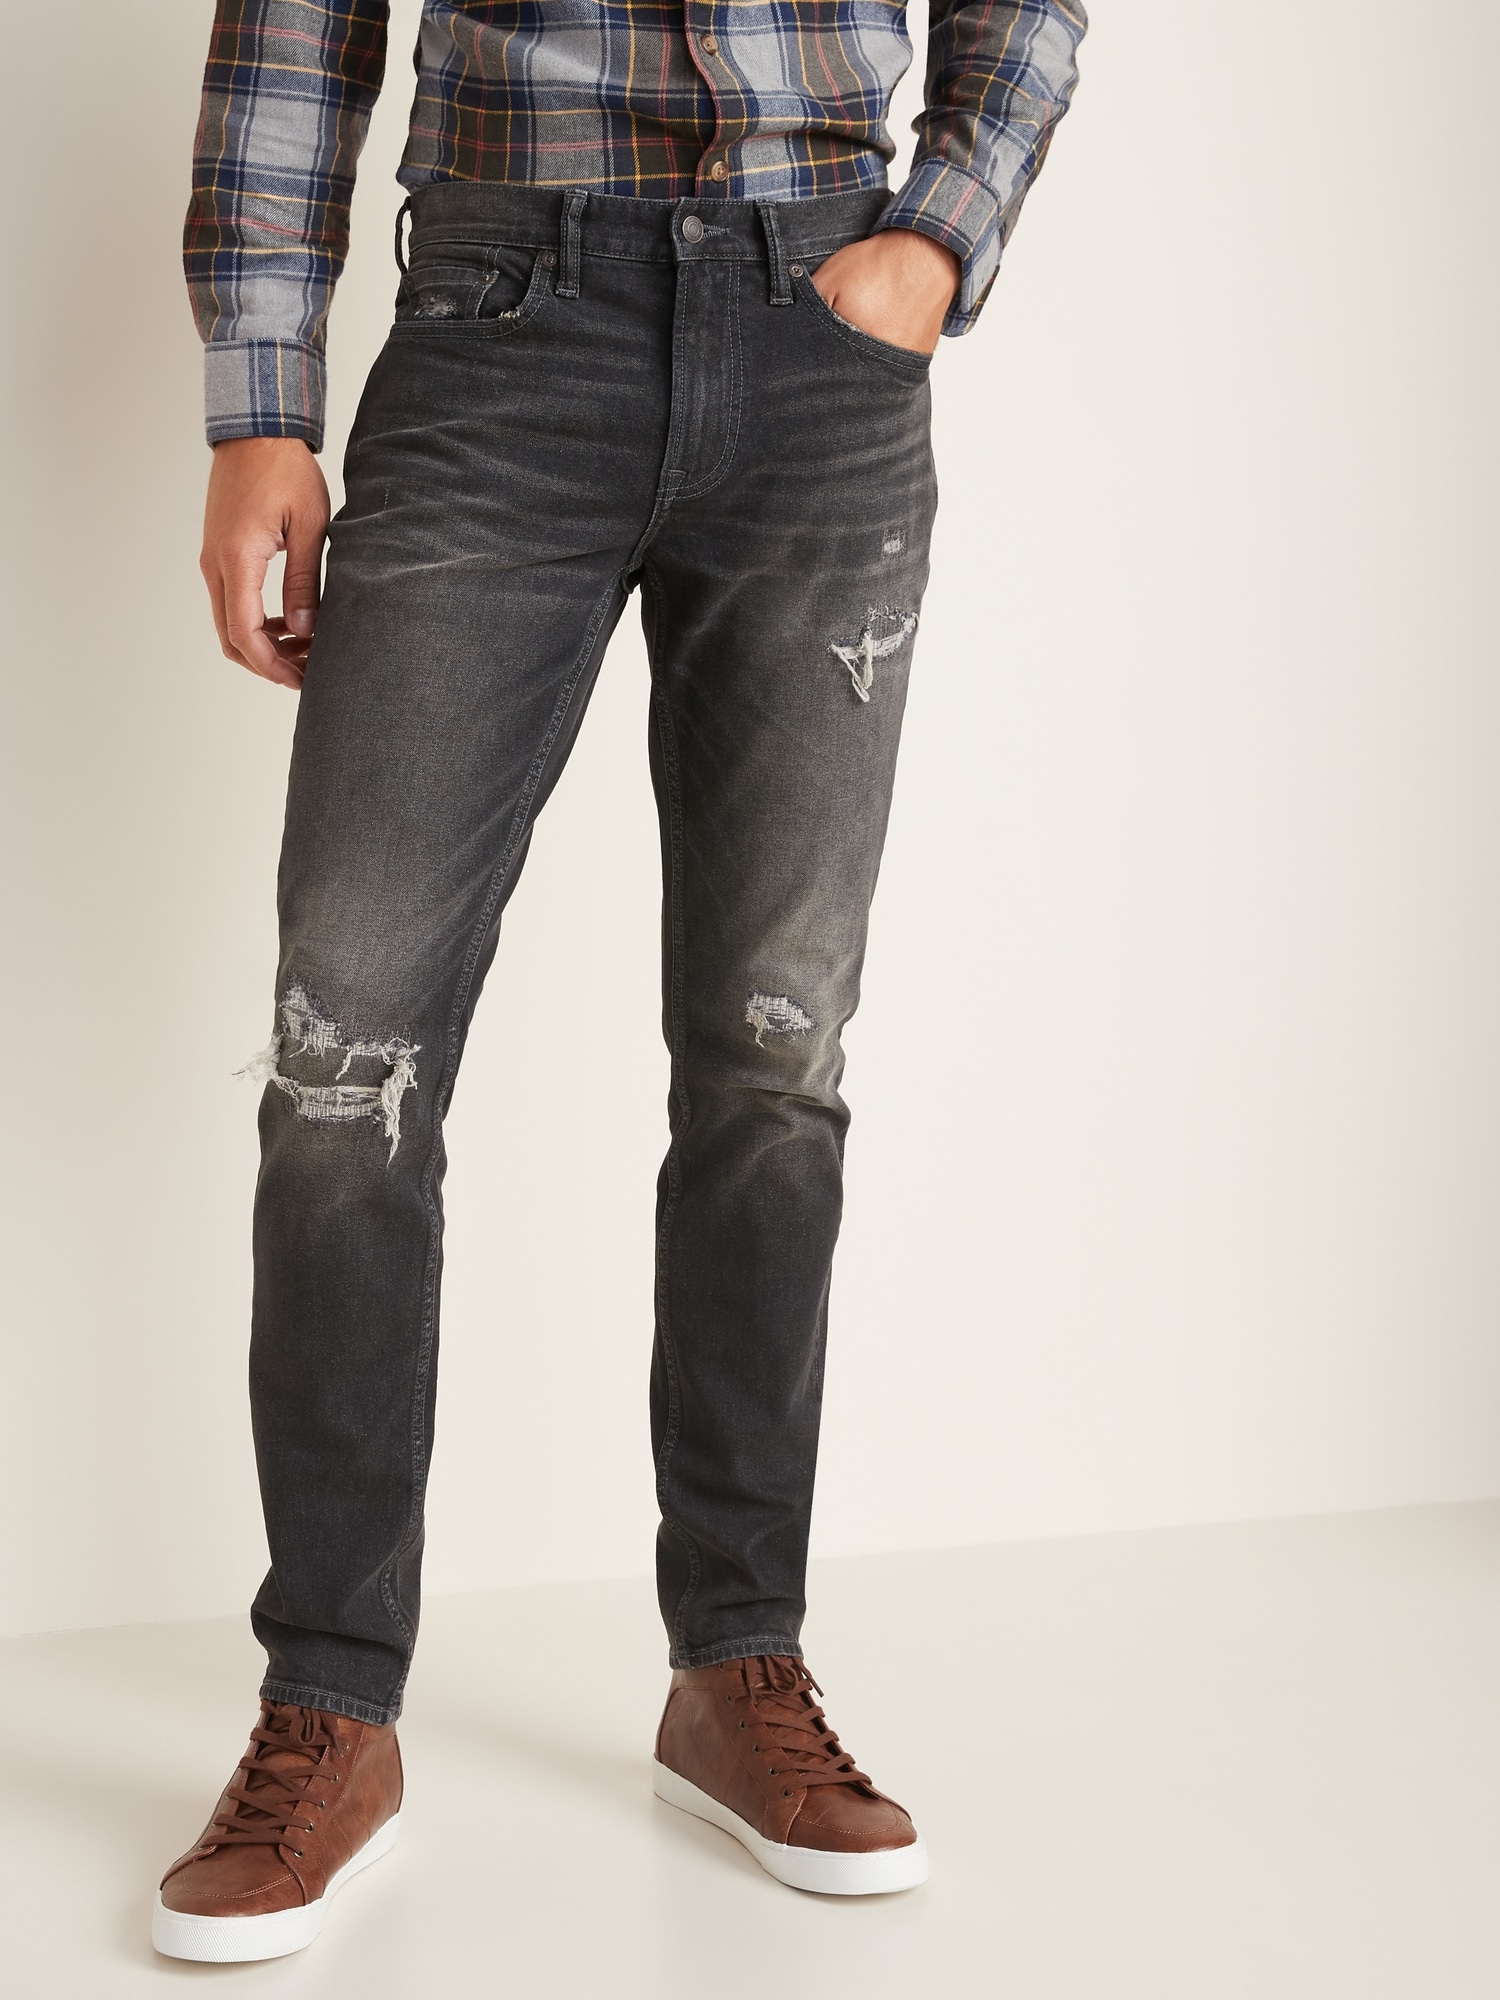 Slim Distressed Built-In Flex Black Jeans for Men